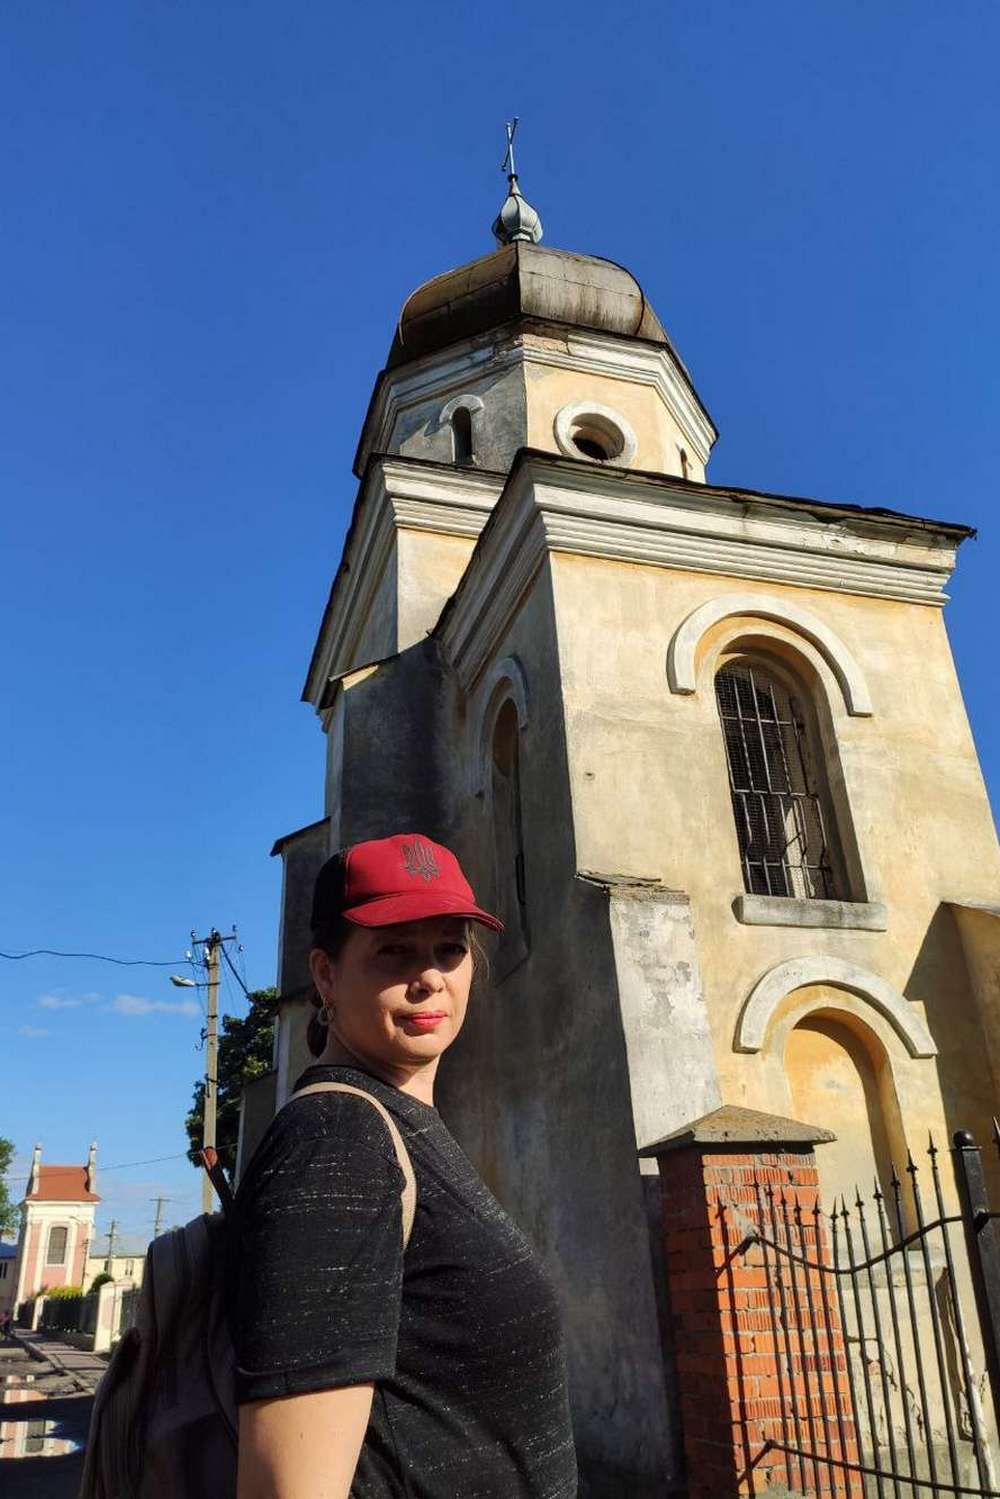 Найстаріше на Львівщині місто Белз, яке нікого не чекає – як воно виглядає сьогодні